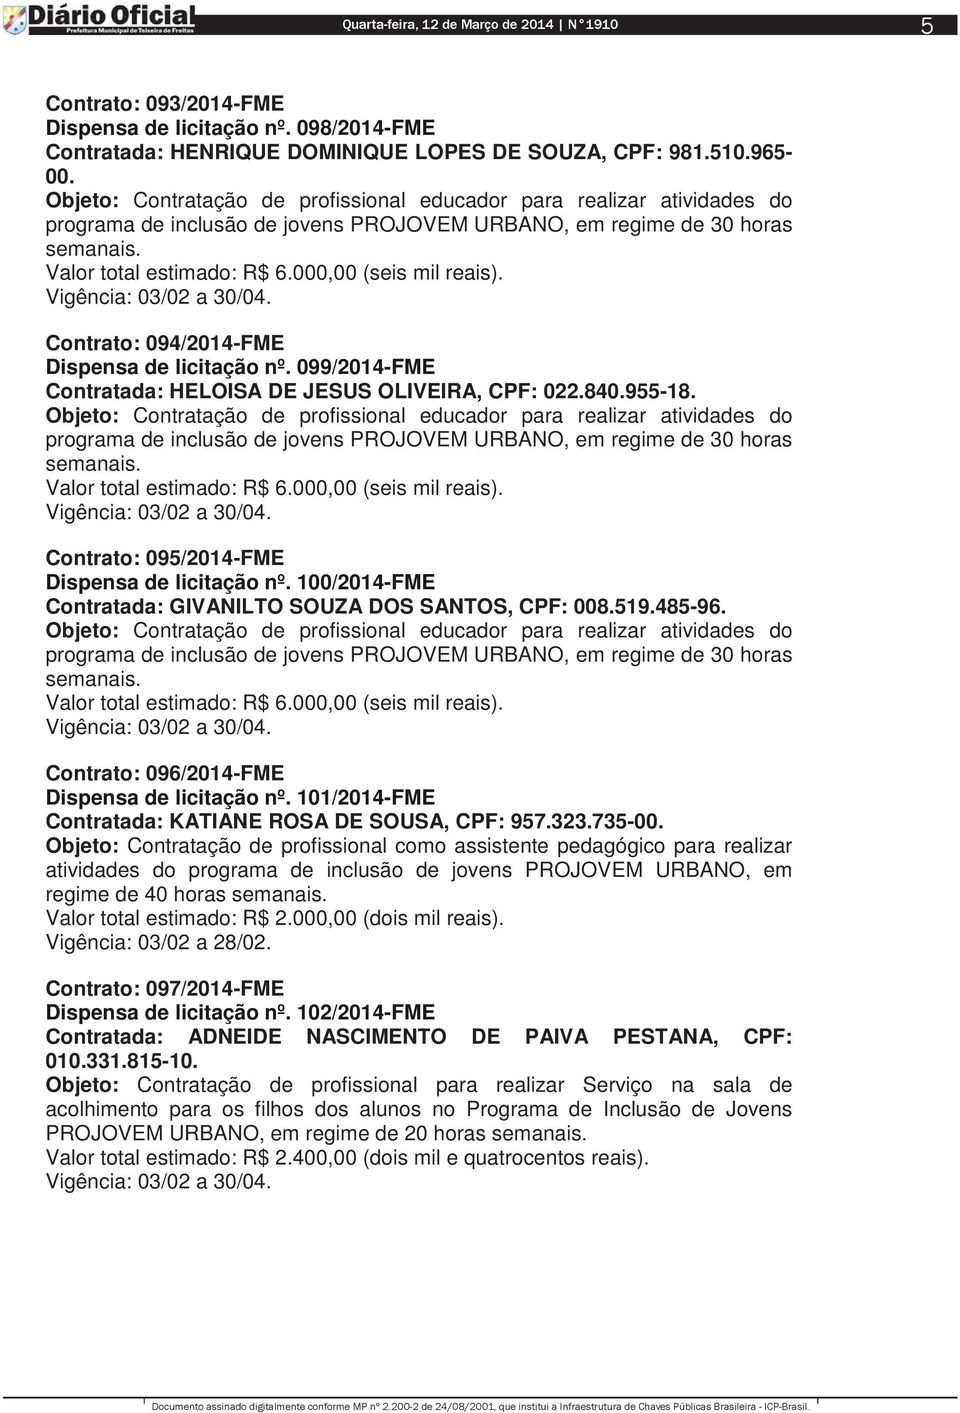 099/2014-FME Contratada: HELOISA DE JESUS OLIVEIRA, CPF: 022.840.955-18.